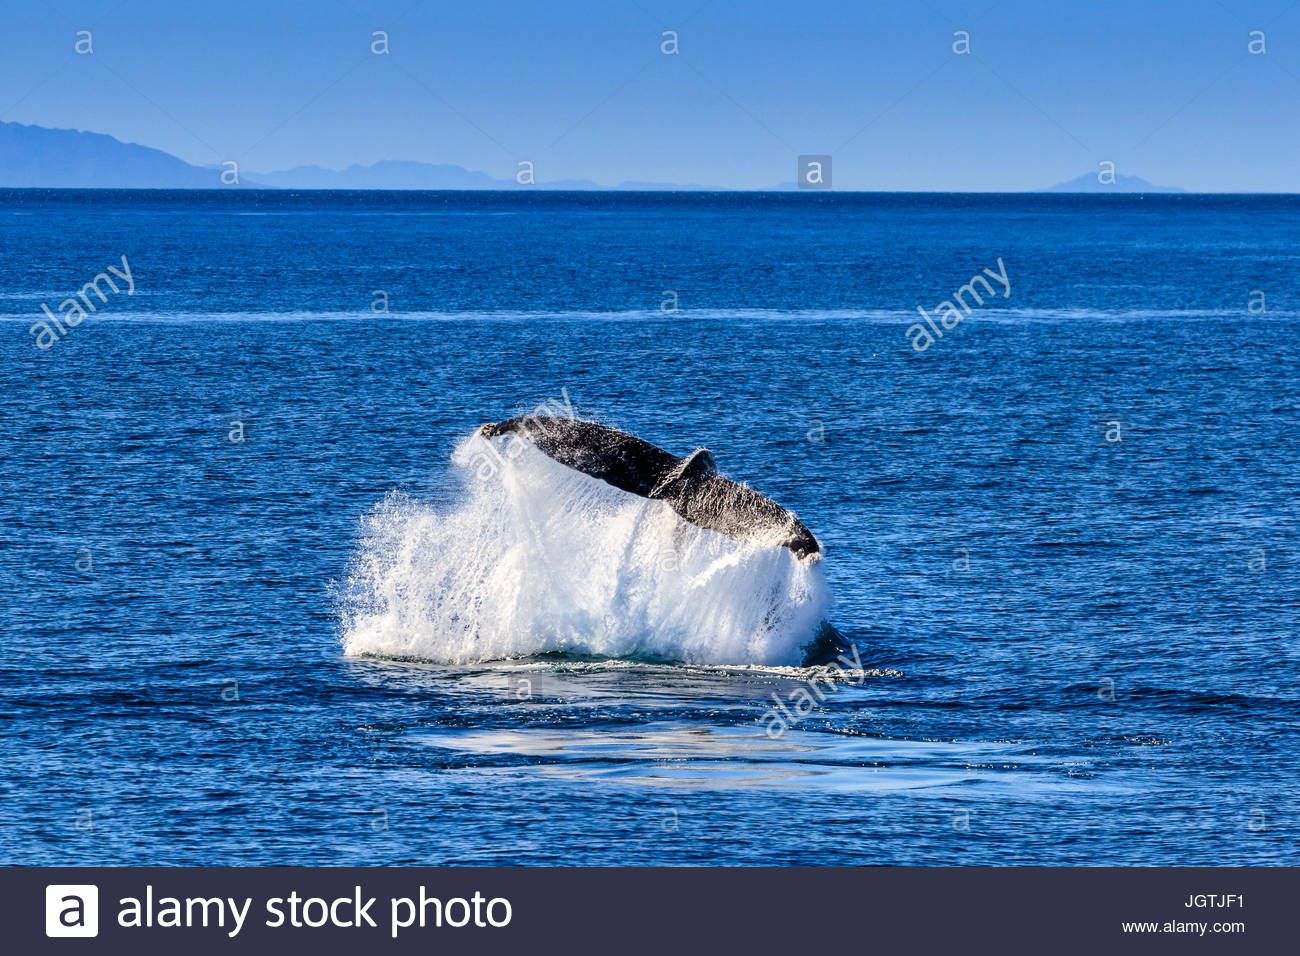 Lobtail Verhalten eines Buckelwal, Impressionen Novaeangliae. Stockfoto